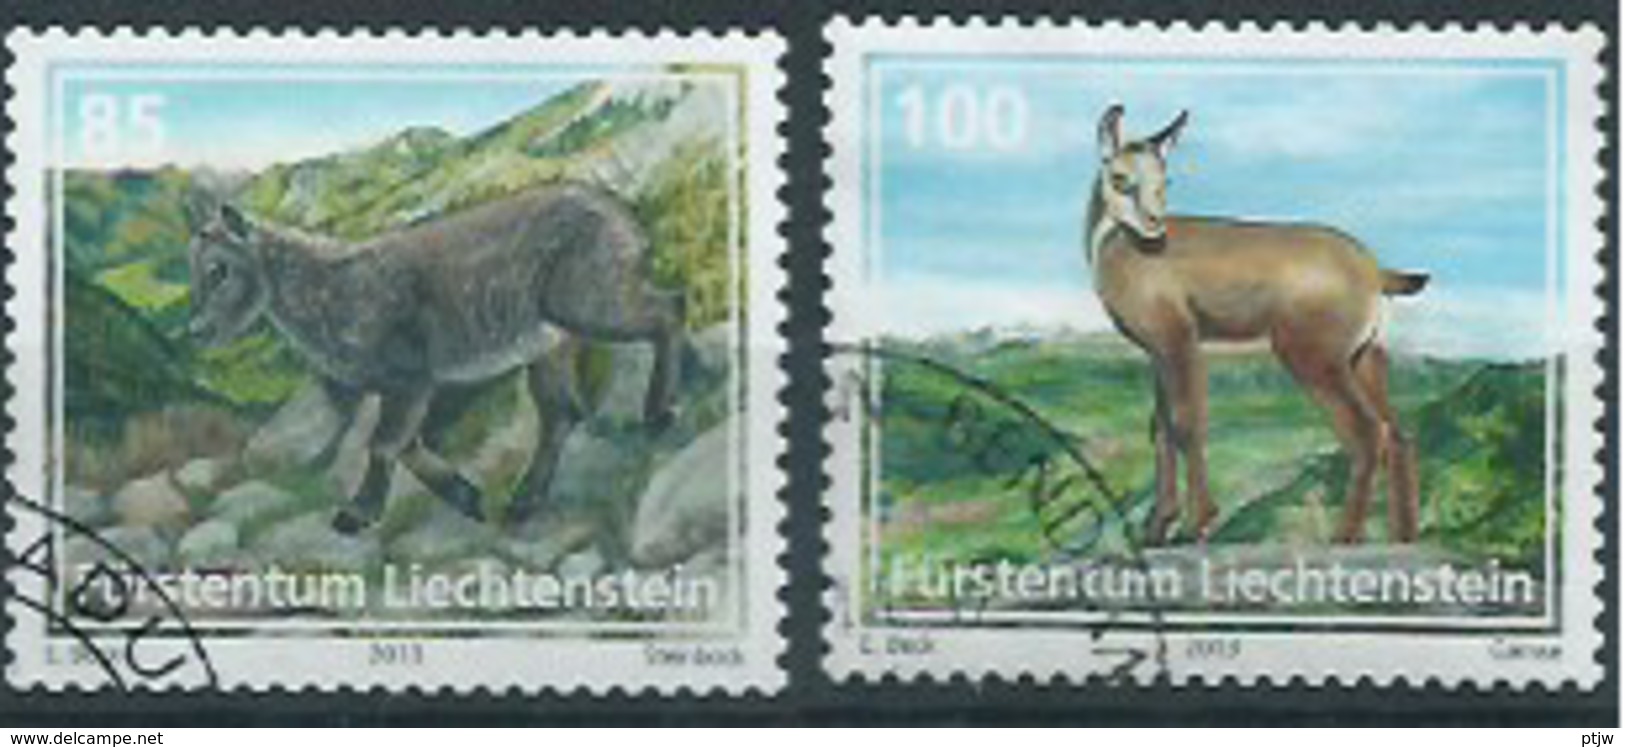 Stamp Of Liechtenstein 2013: Animals 0.85 + 1.00 Used - Nature - Animaux - Oblitere - Usados